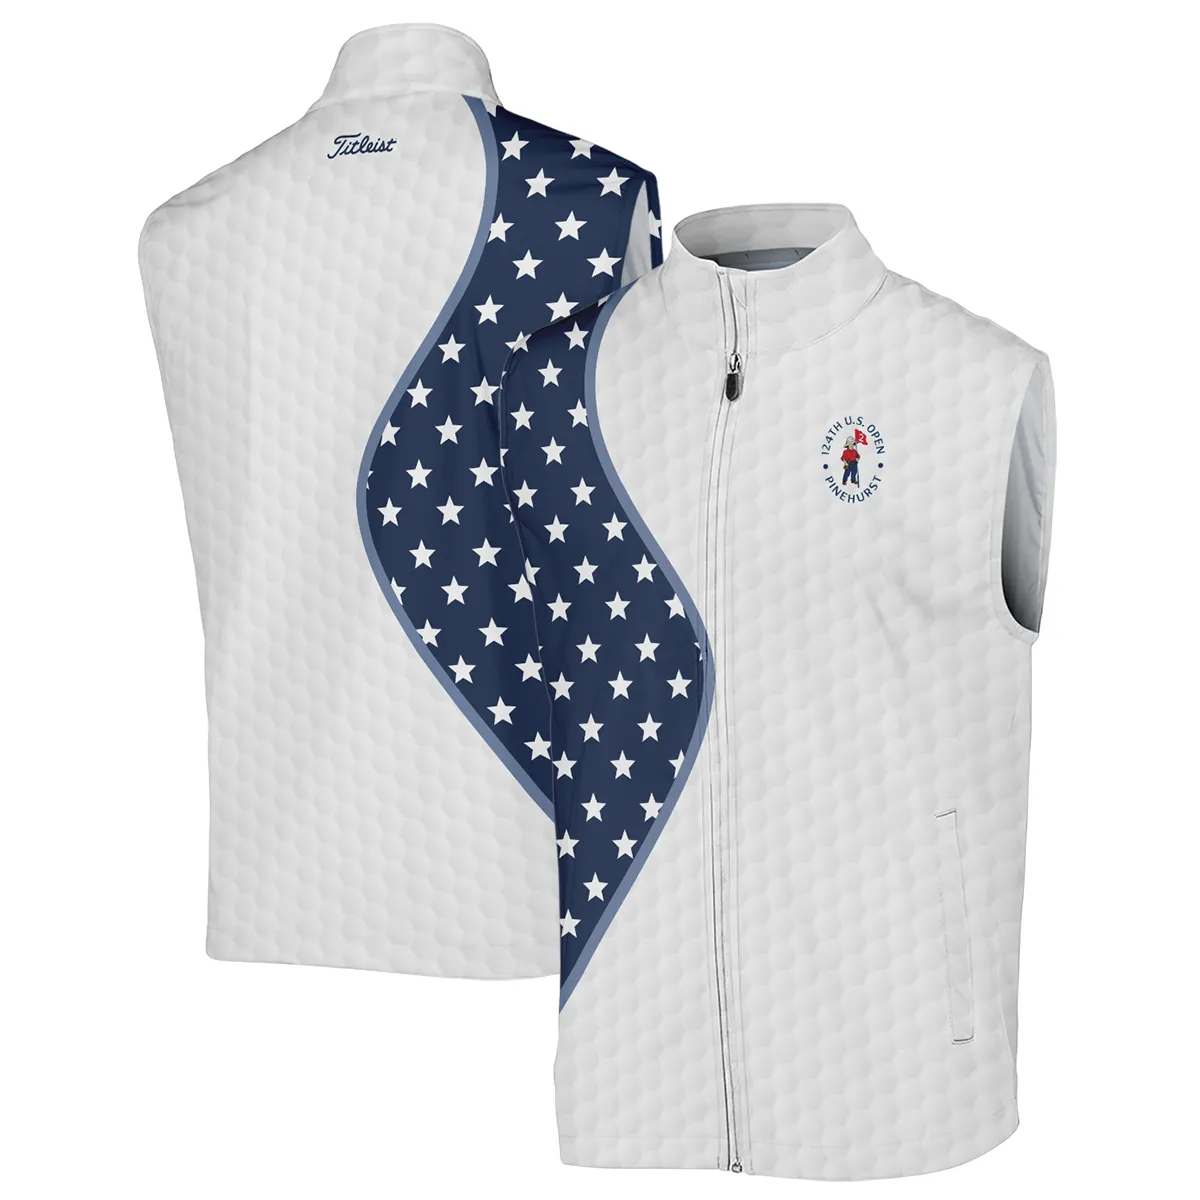 Golf Pattern Light Blue Cup 124th U.S. Open Pinehurst Titleist Zipper Hoodie Shirt Style Classic